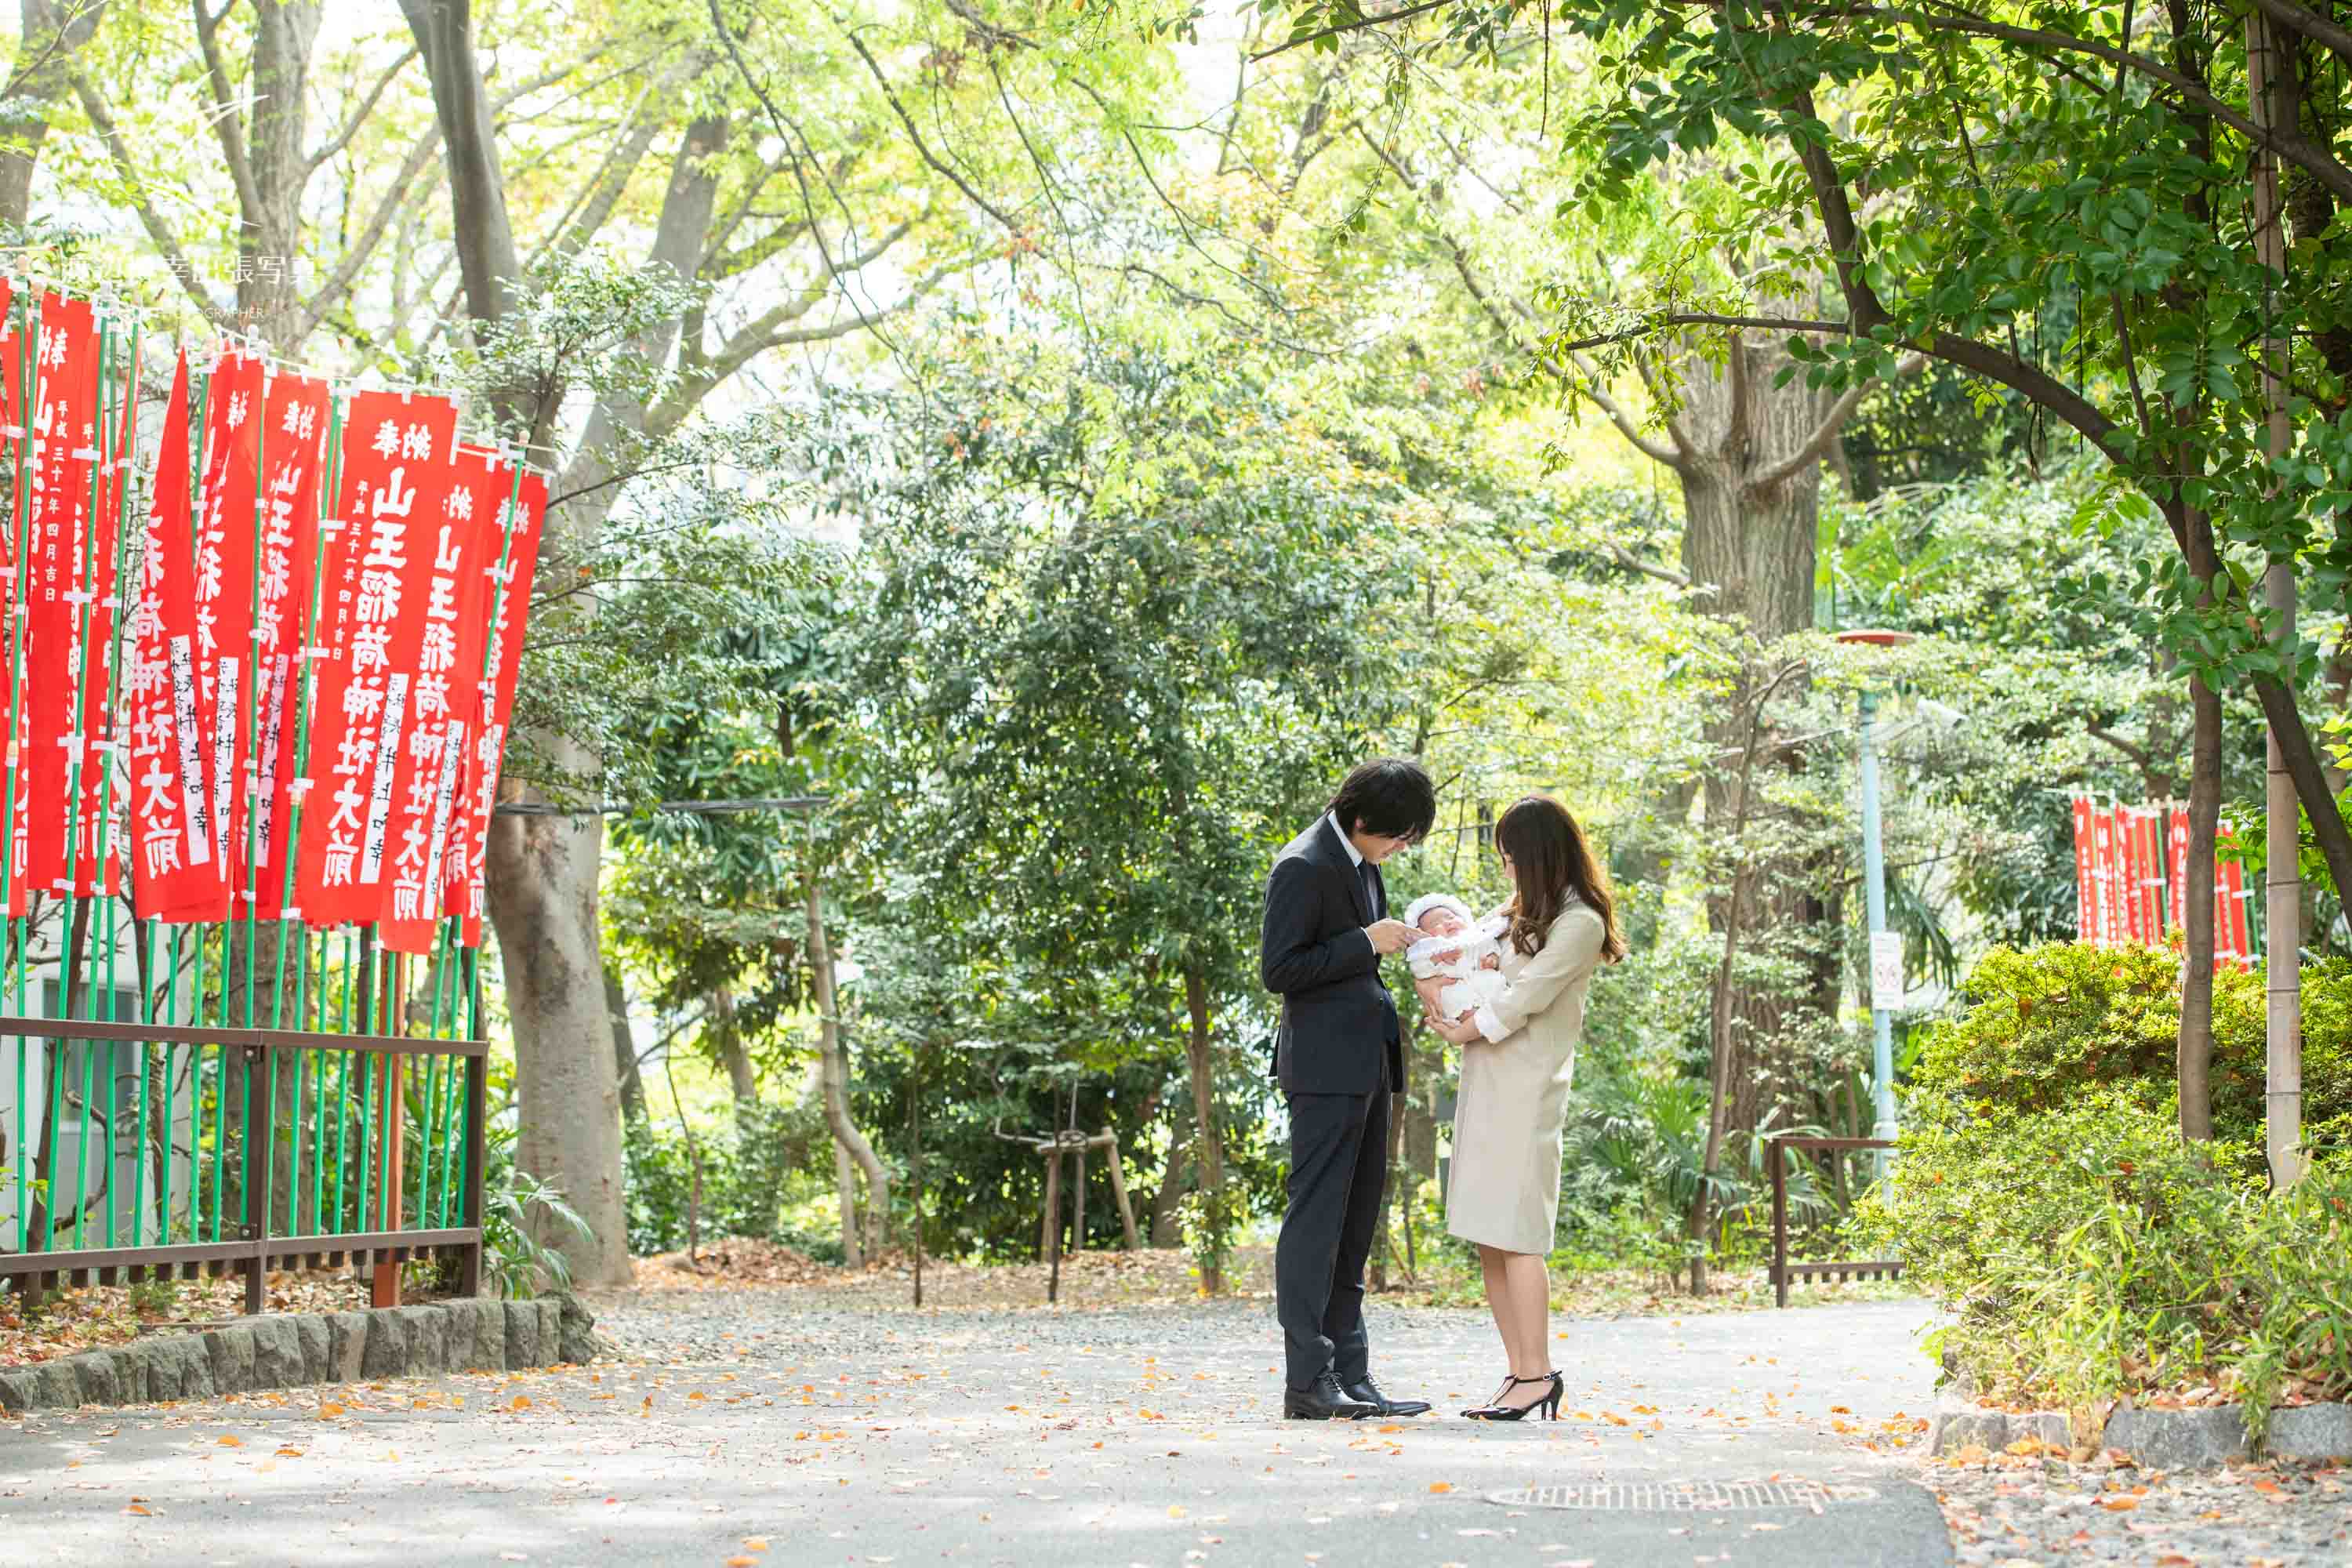 赤坂の日枝神社の千本鳥居の前でお宮参りの掛着を着て赤ちゃんを抱く夫婦の写真